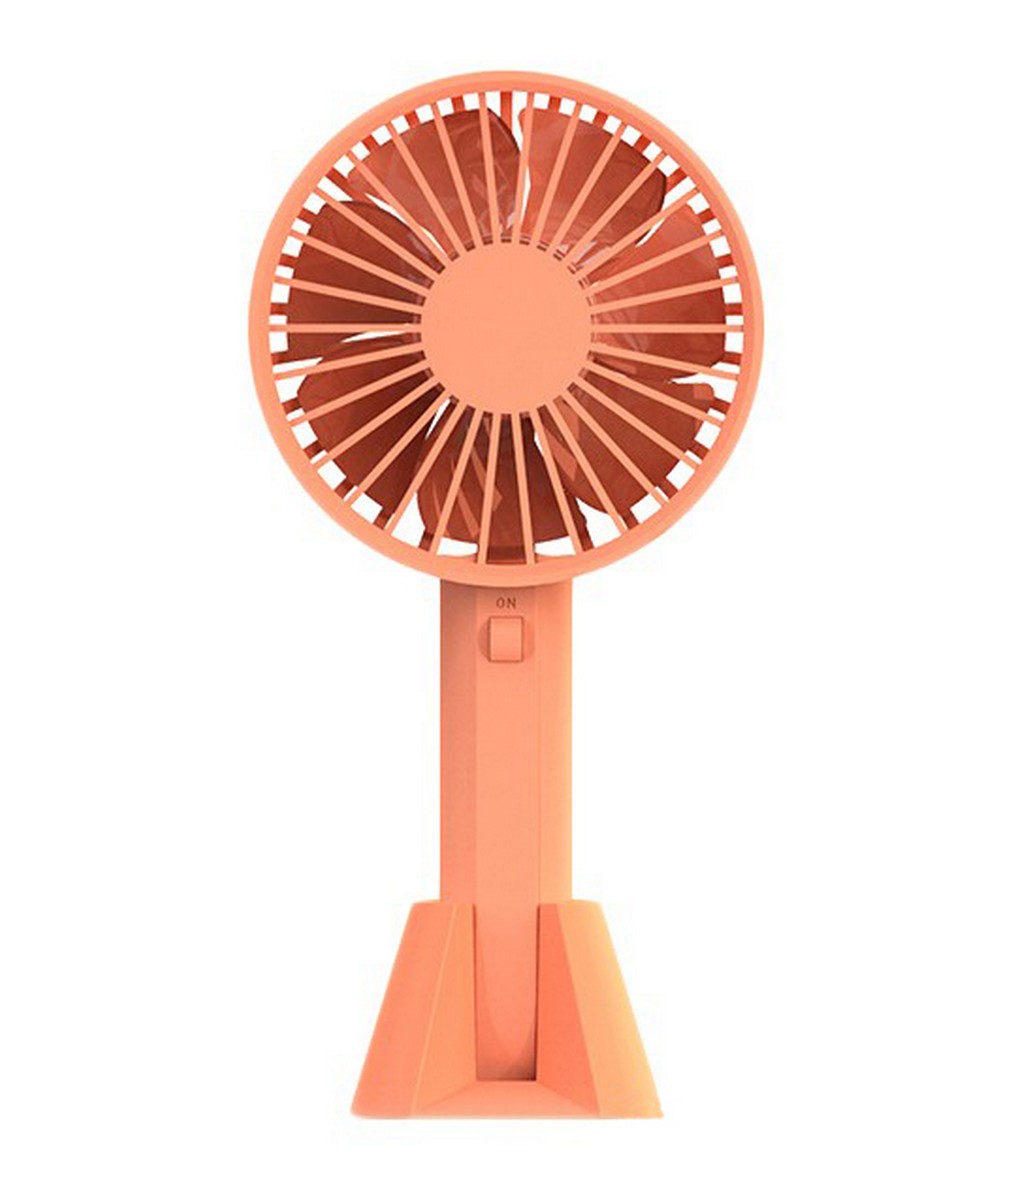 Інструкція вентилятор Xiaomi VH Portable Handheld fan Orange